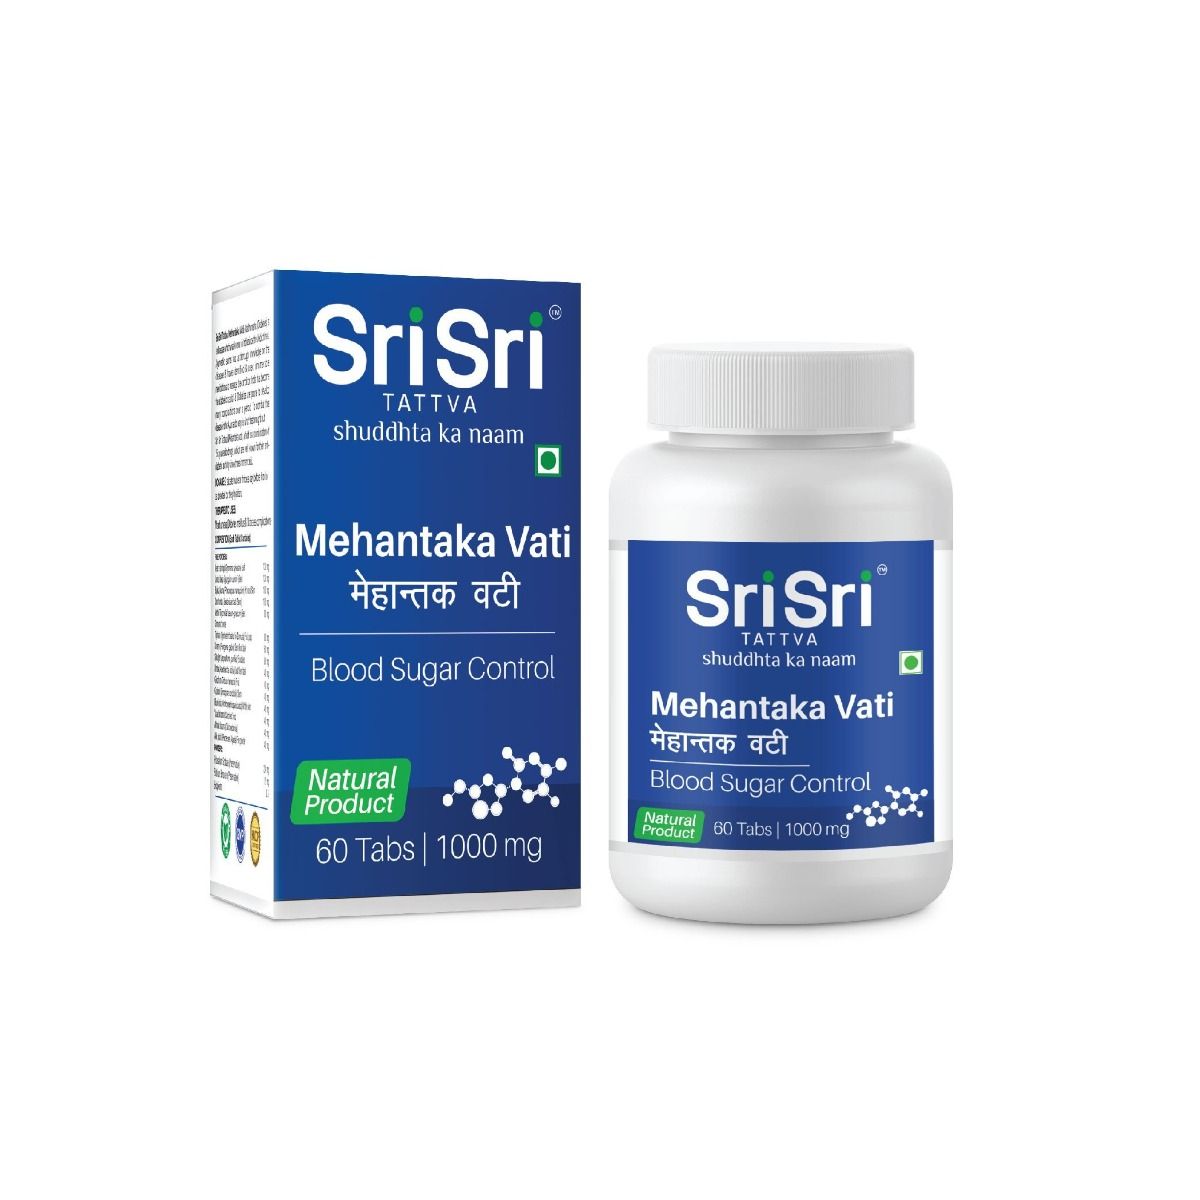 Sri Sri Tattva Mehantaka Vati 1000 mg, 60 Tablets, Pack of 1 